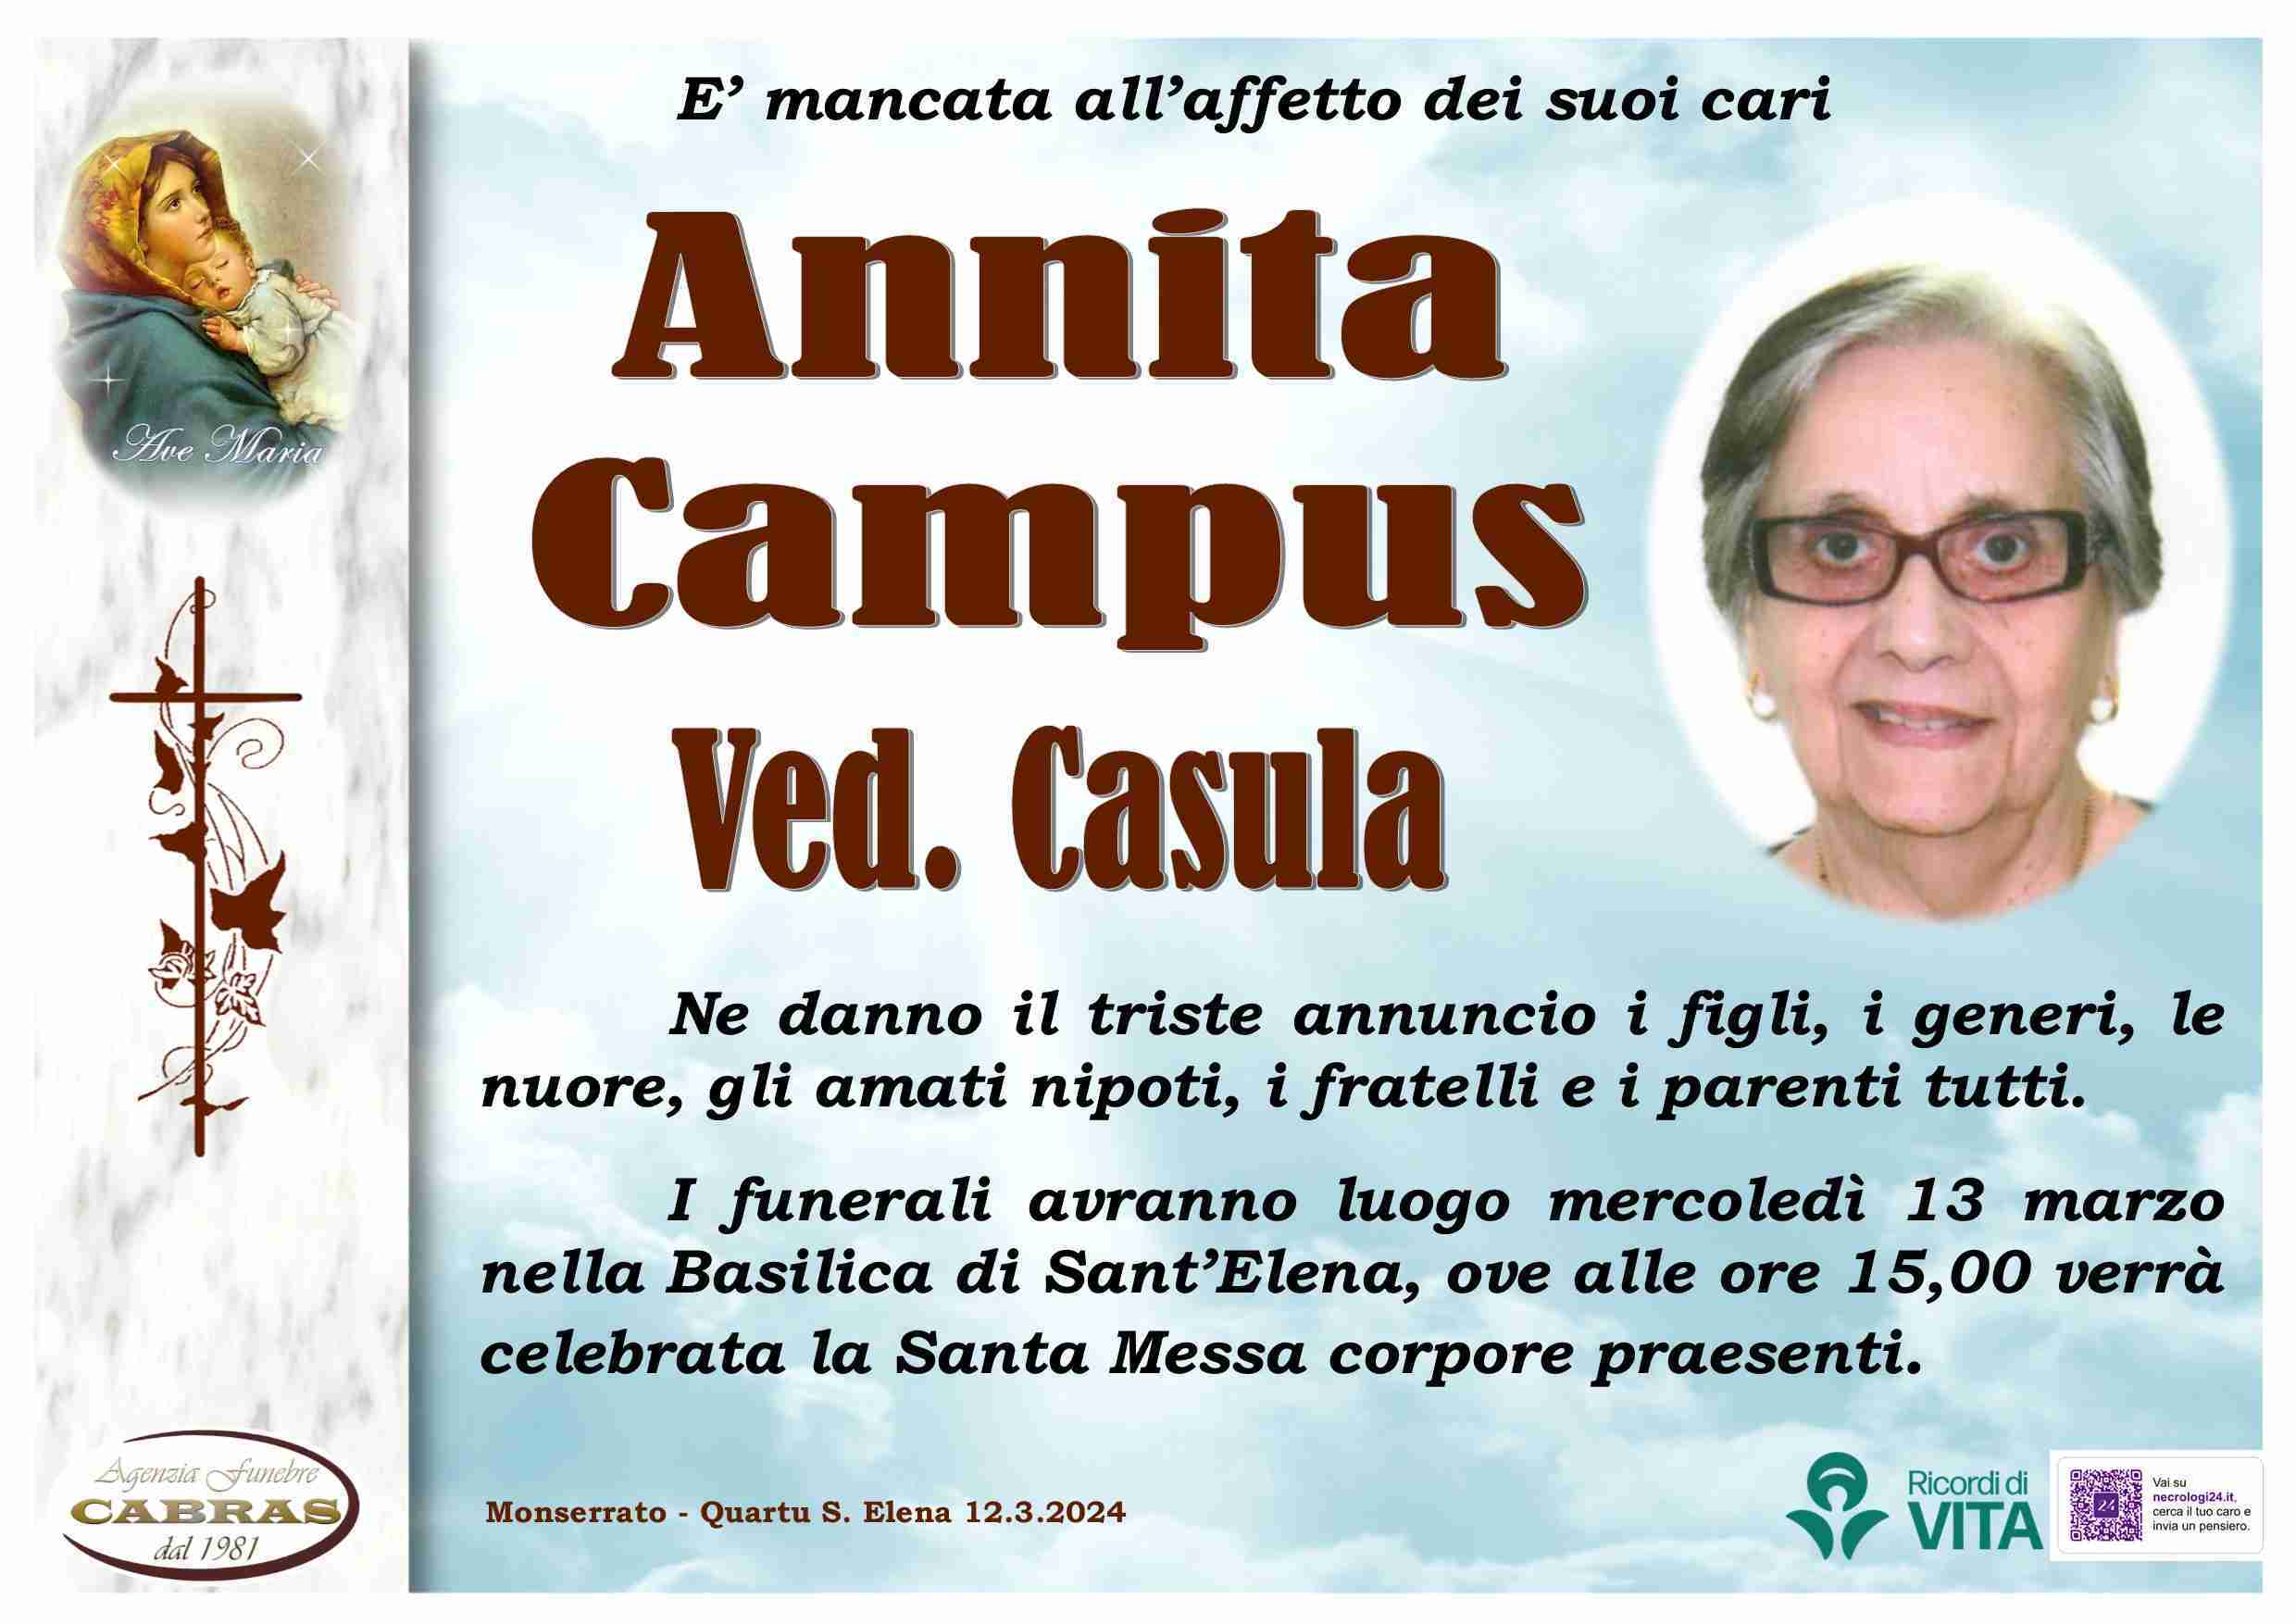 Annita Campus